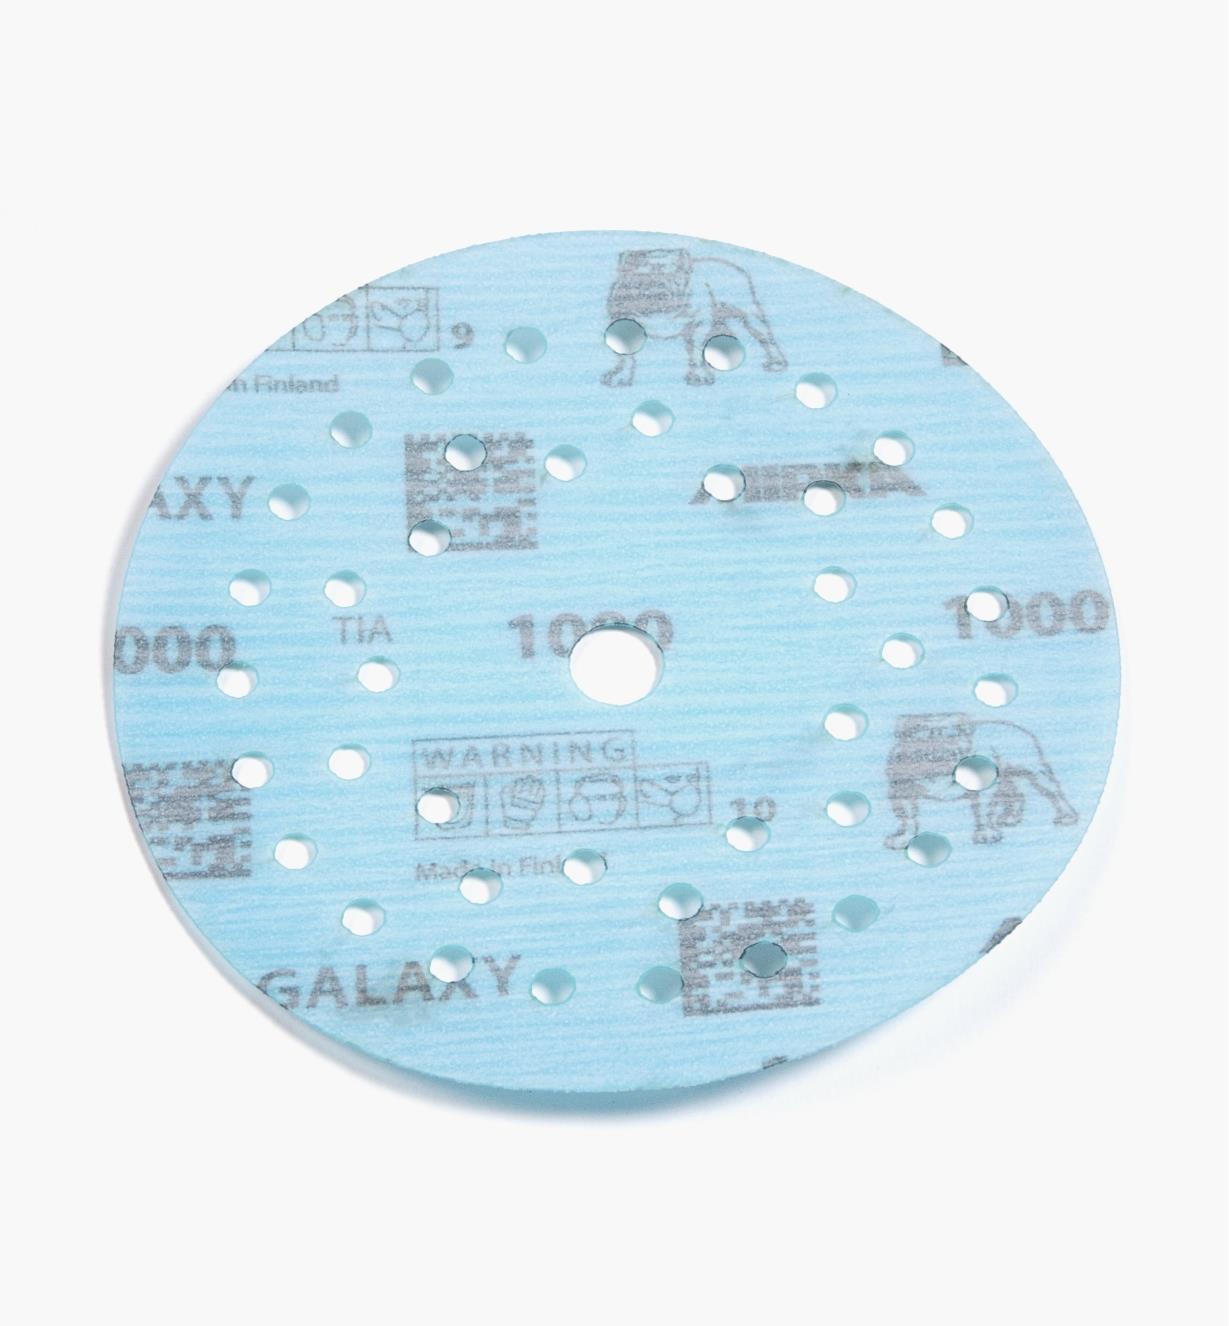 08K1354 - Disque abrasif autoagrippant Galaxy Multifit, 5 po, grain 1000, l'unité